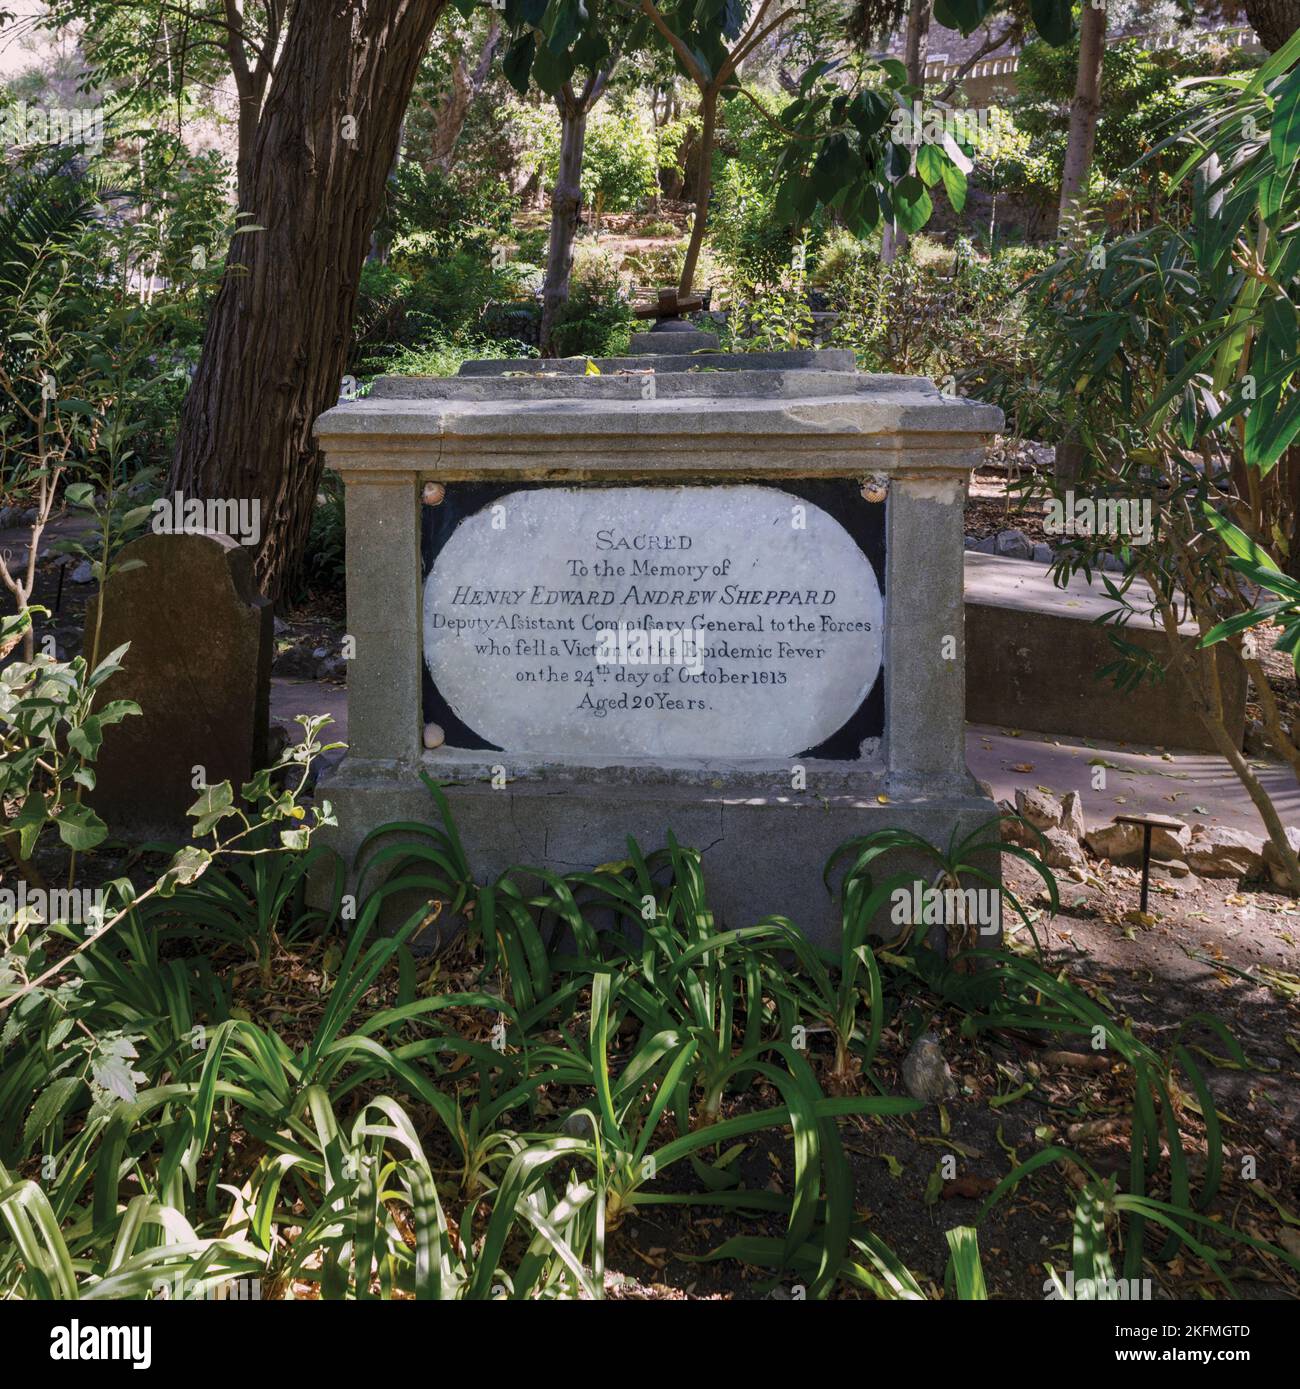 Cimitero di Trafalgar, Gibilterra. La tomba di Henry Edward Andrew Sheppard che morì di febbre gialla nel 1813. Gibilterra ha subito focolai di Fe giallo Foto Stock